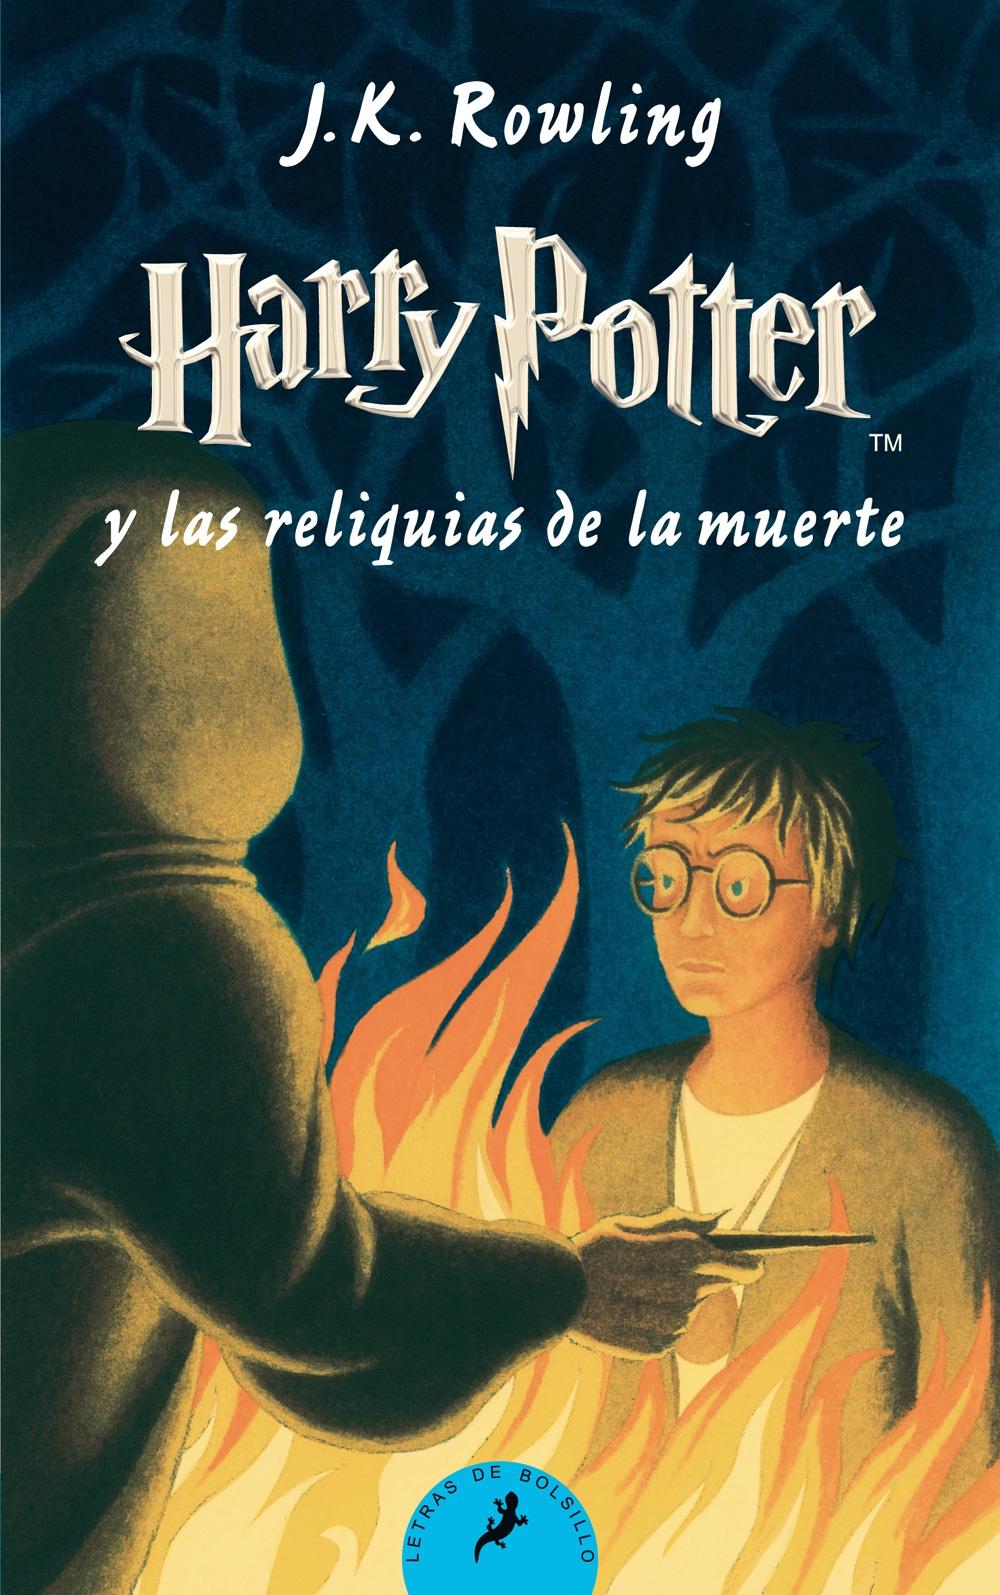 Harry Potter y las Reliquias de la Muerte "Hp 7 Bolsillo"